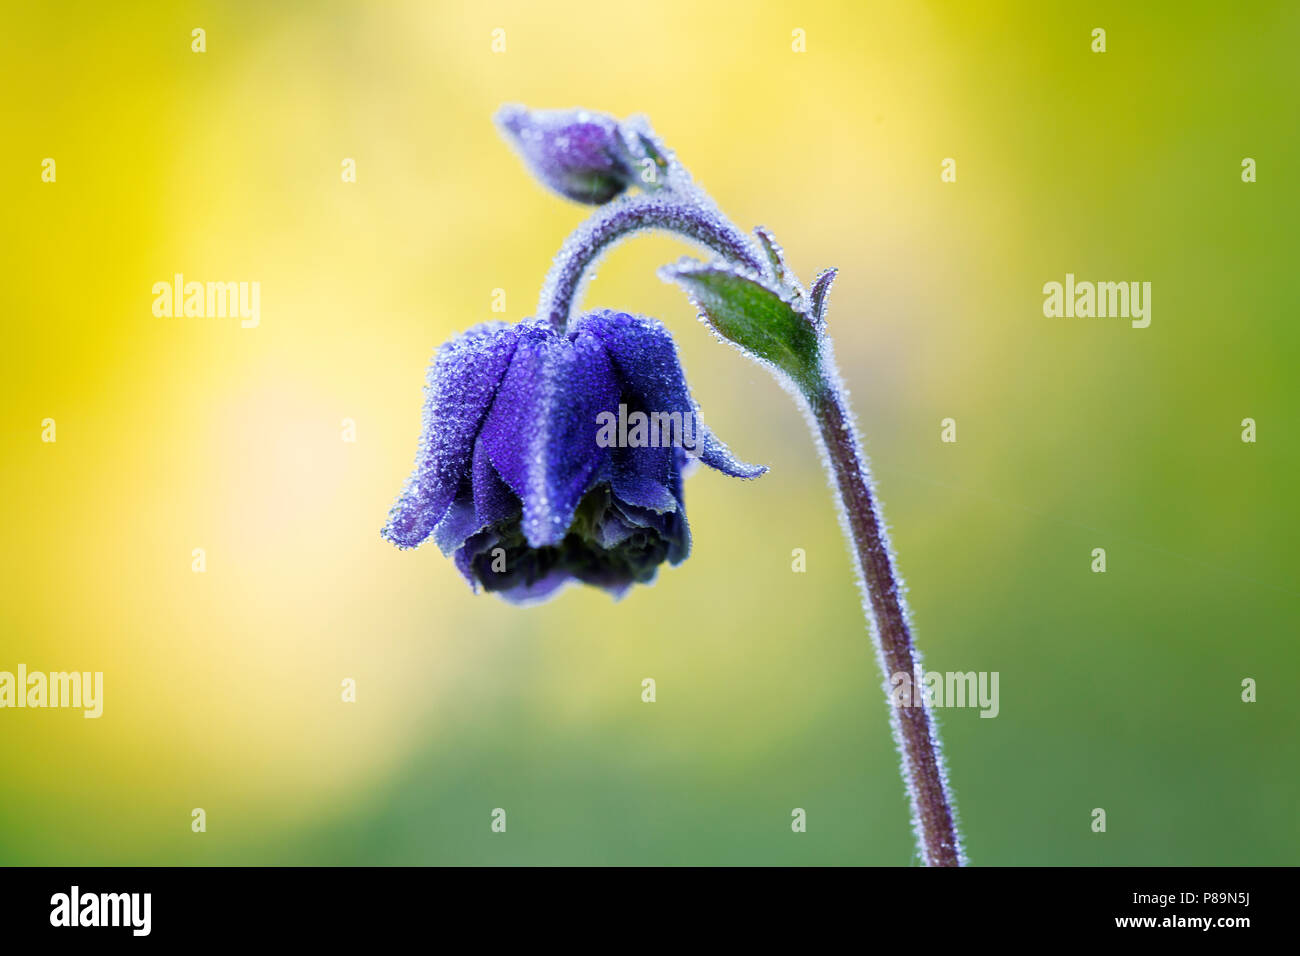 Bloeiende akeleien, Flowering Columbines Stock Photo